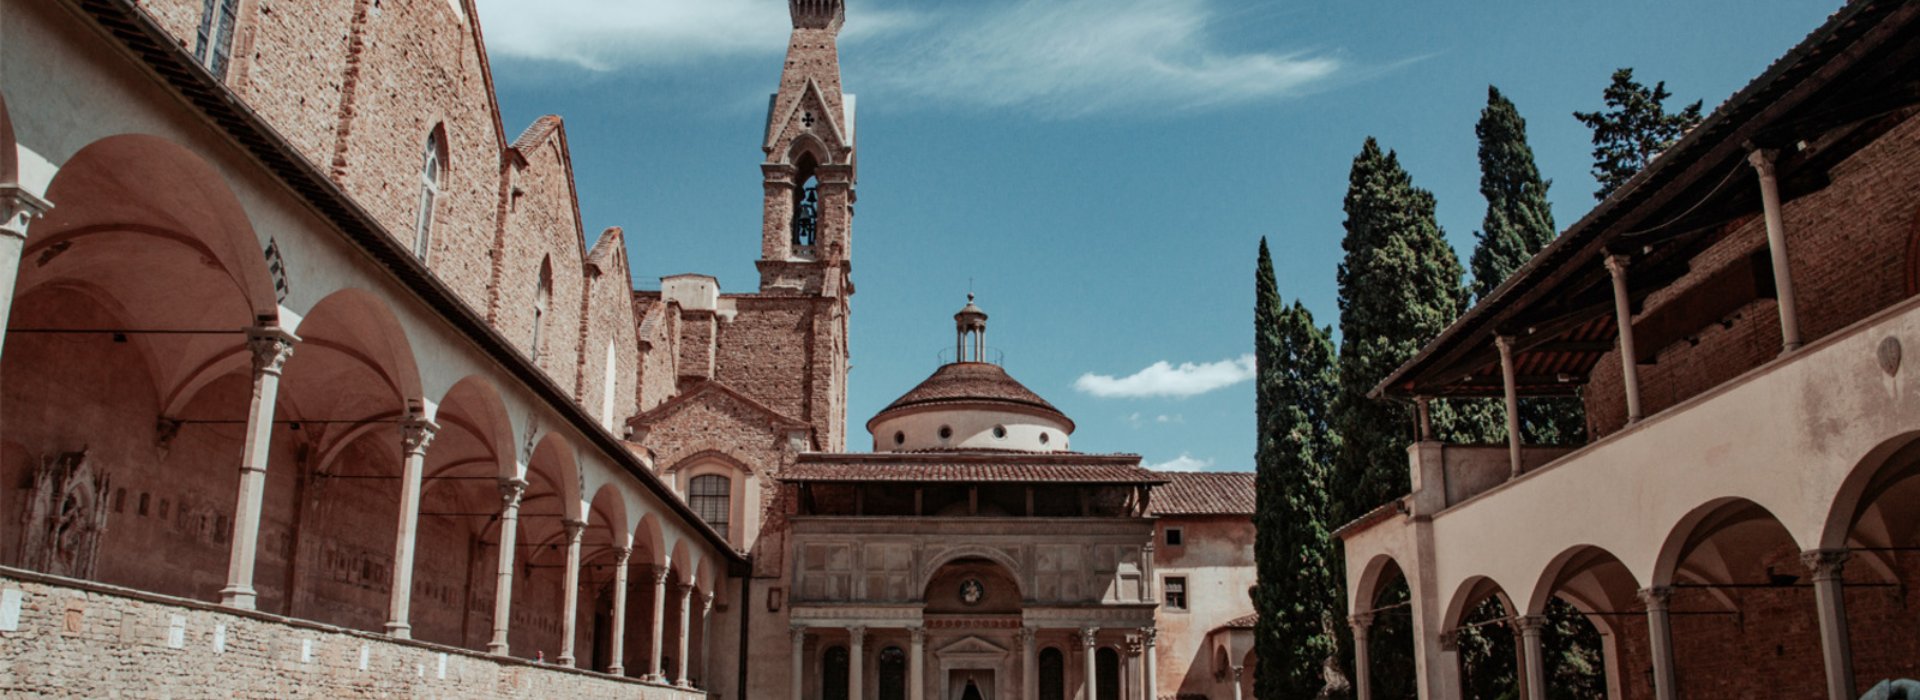 Visita guidata alla maestosa basilica di Santa Croce di Firenze